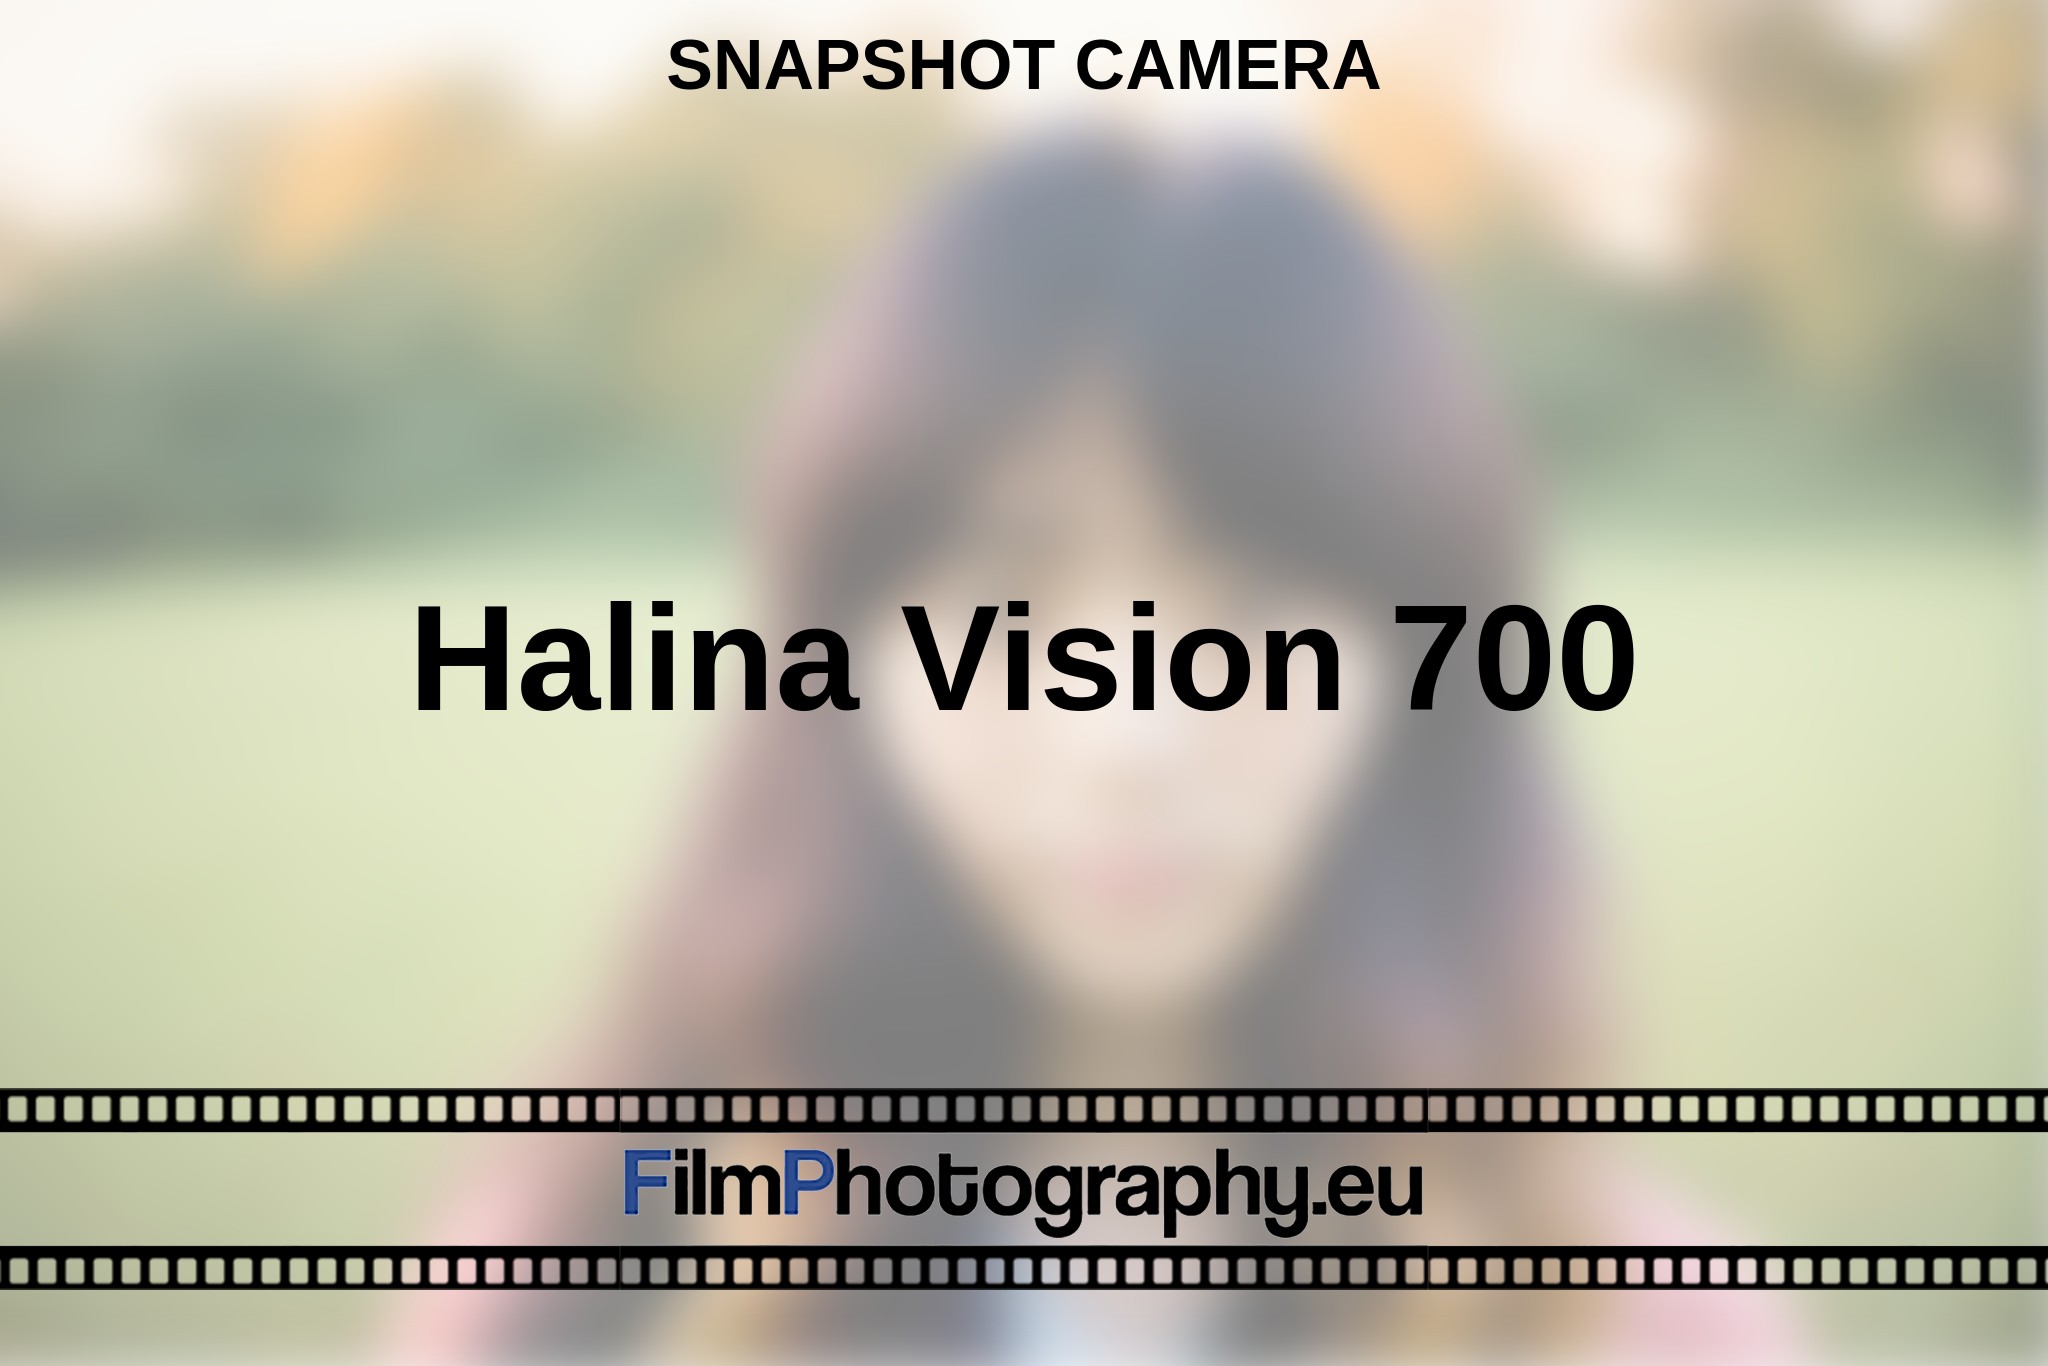 halina-vision-700-snapshot-camera-en-bnv.jpg